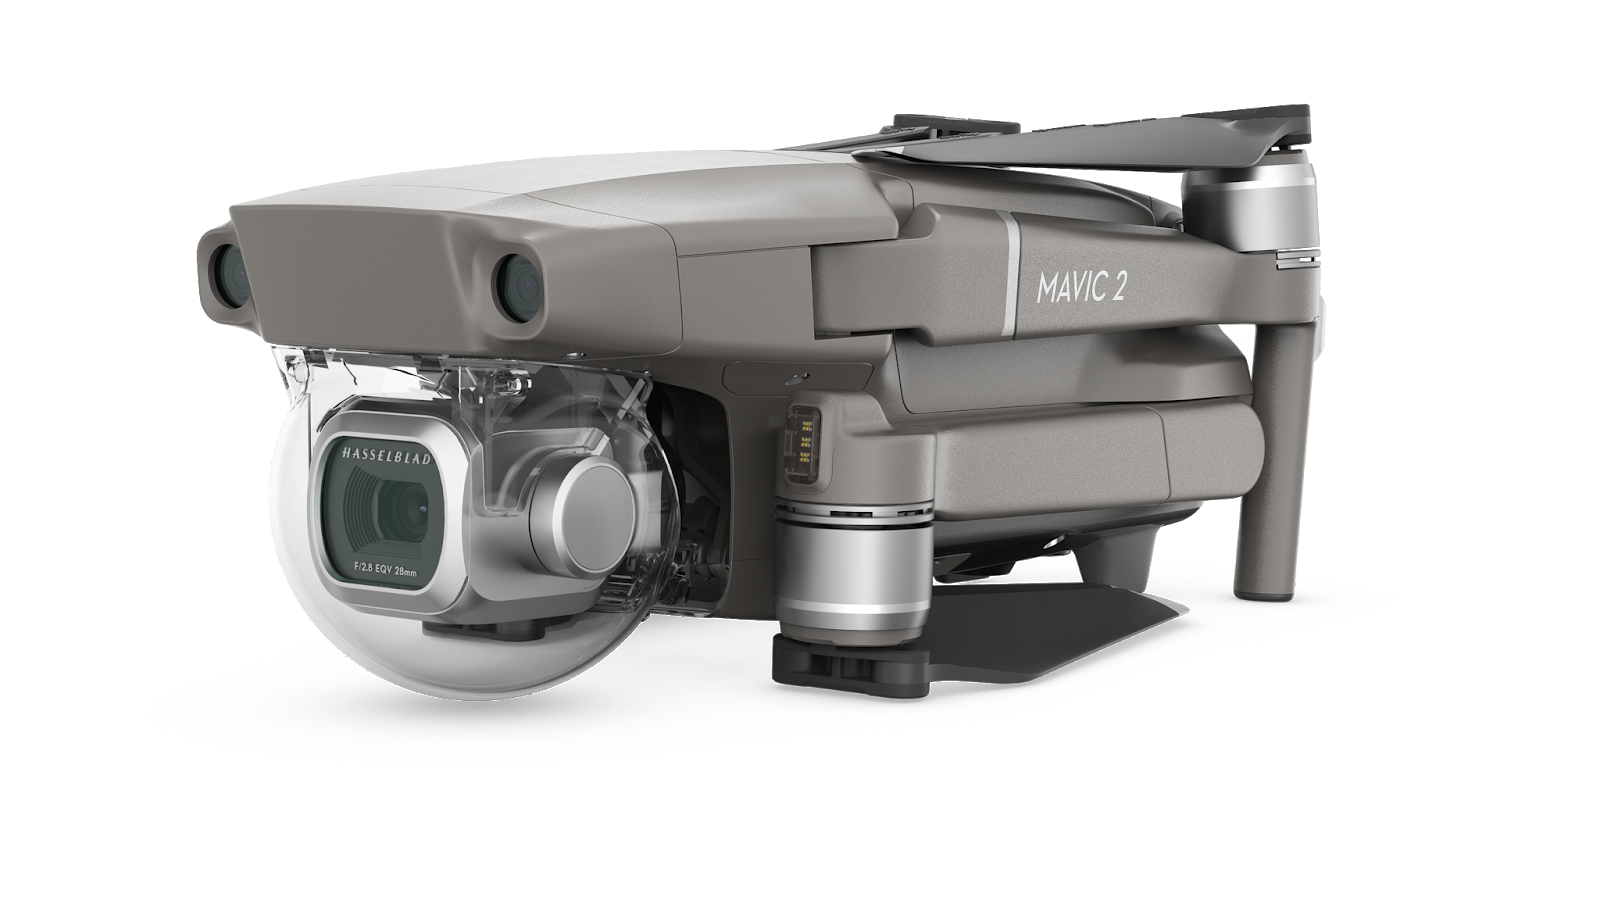 Penivo altezza 3 cm di estensione di atterraggio per DJI Mavic 2 Pro/Zoom drone schermo obiettivo della fotocamera giunto cardanico accessori 